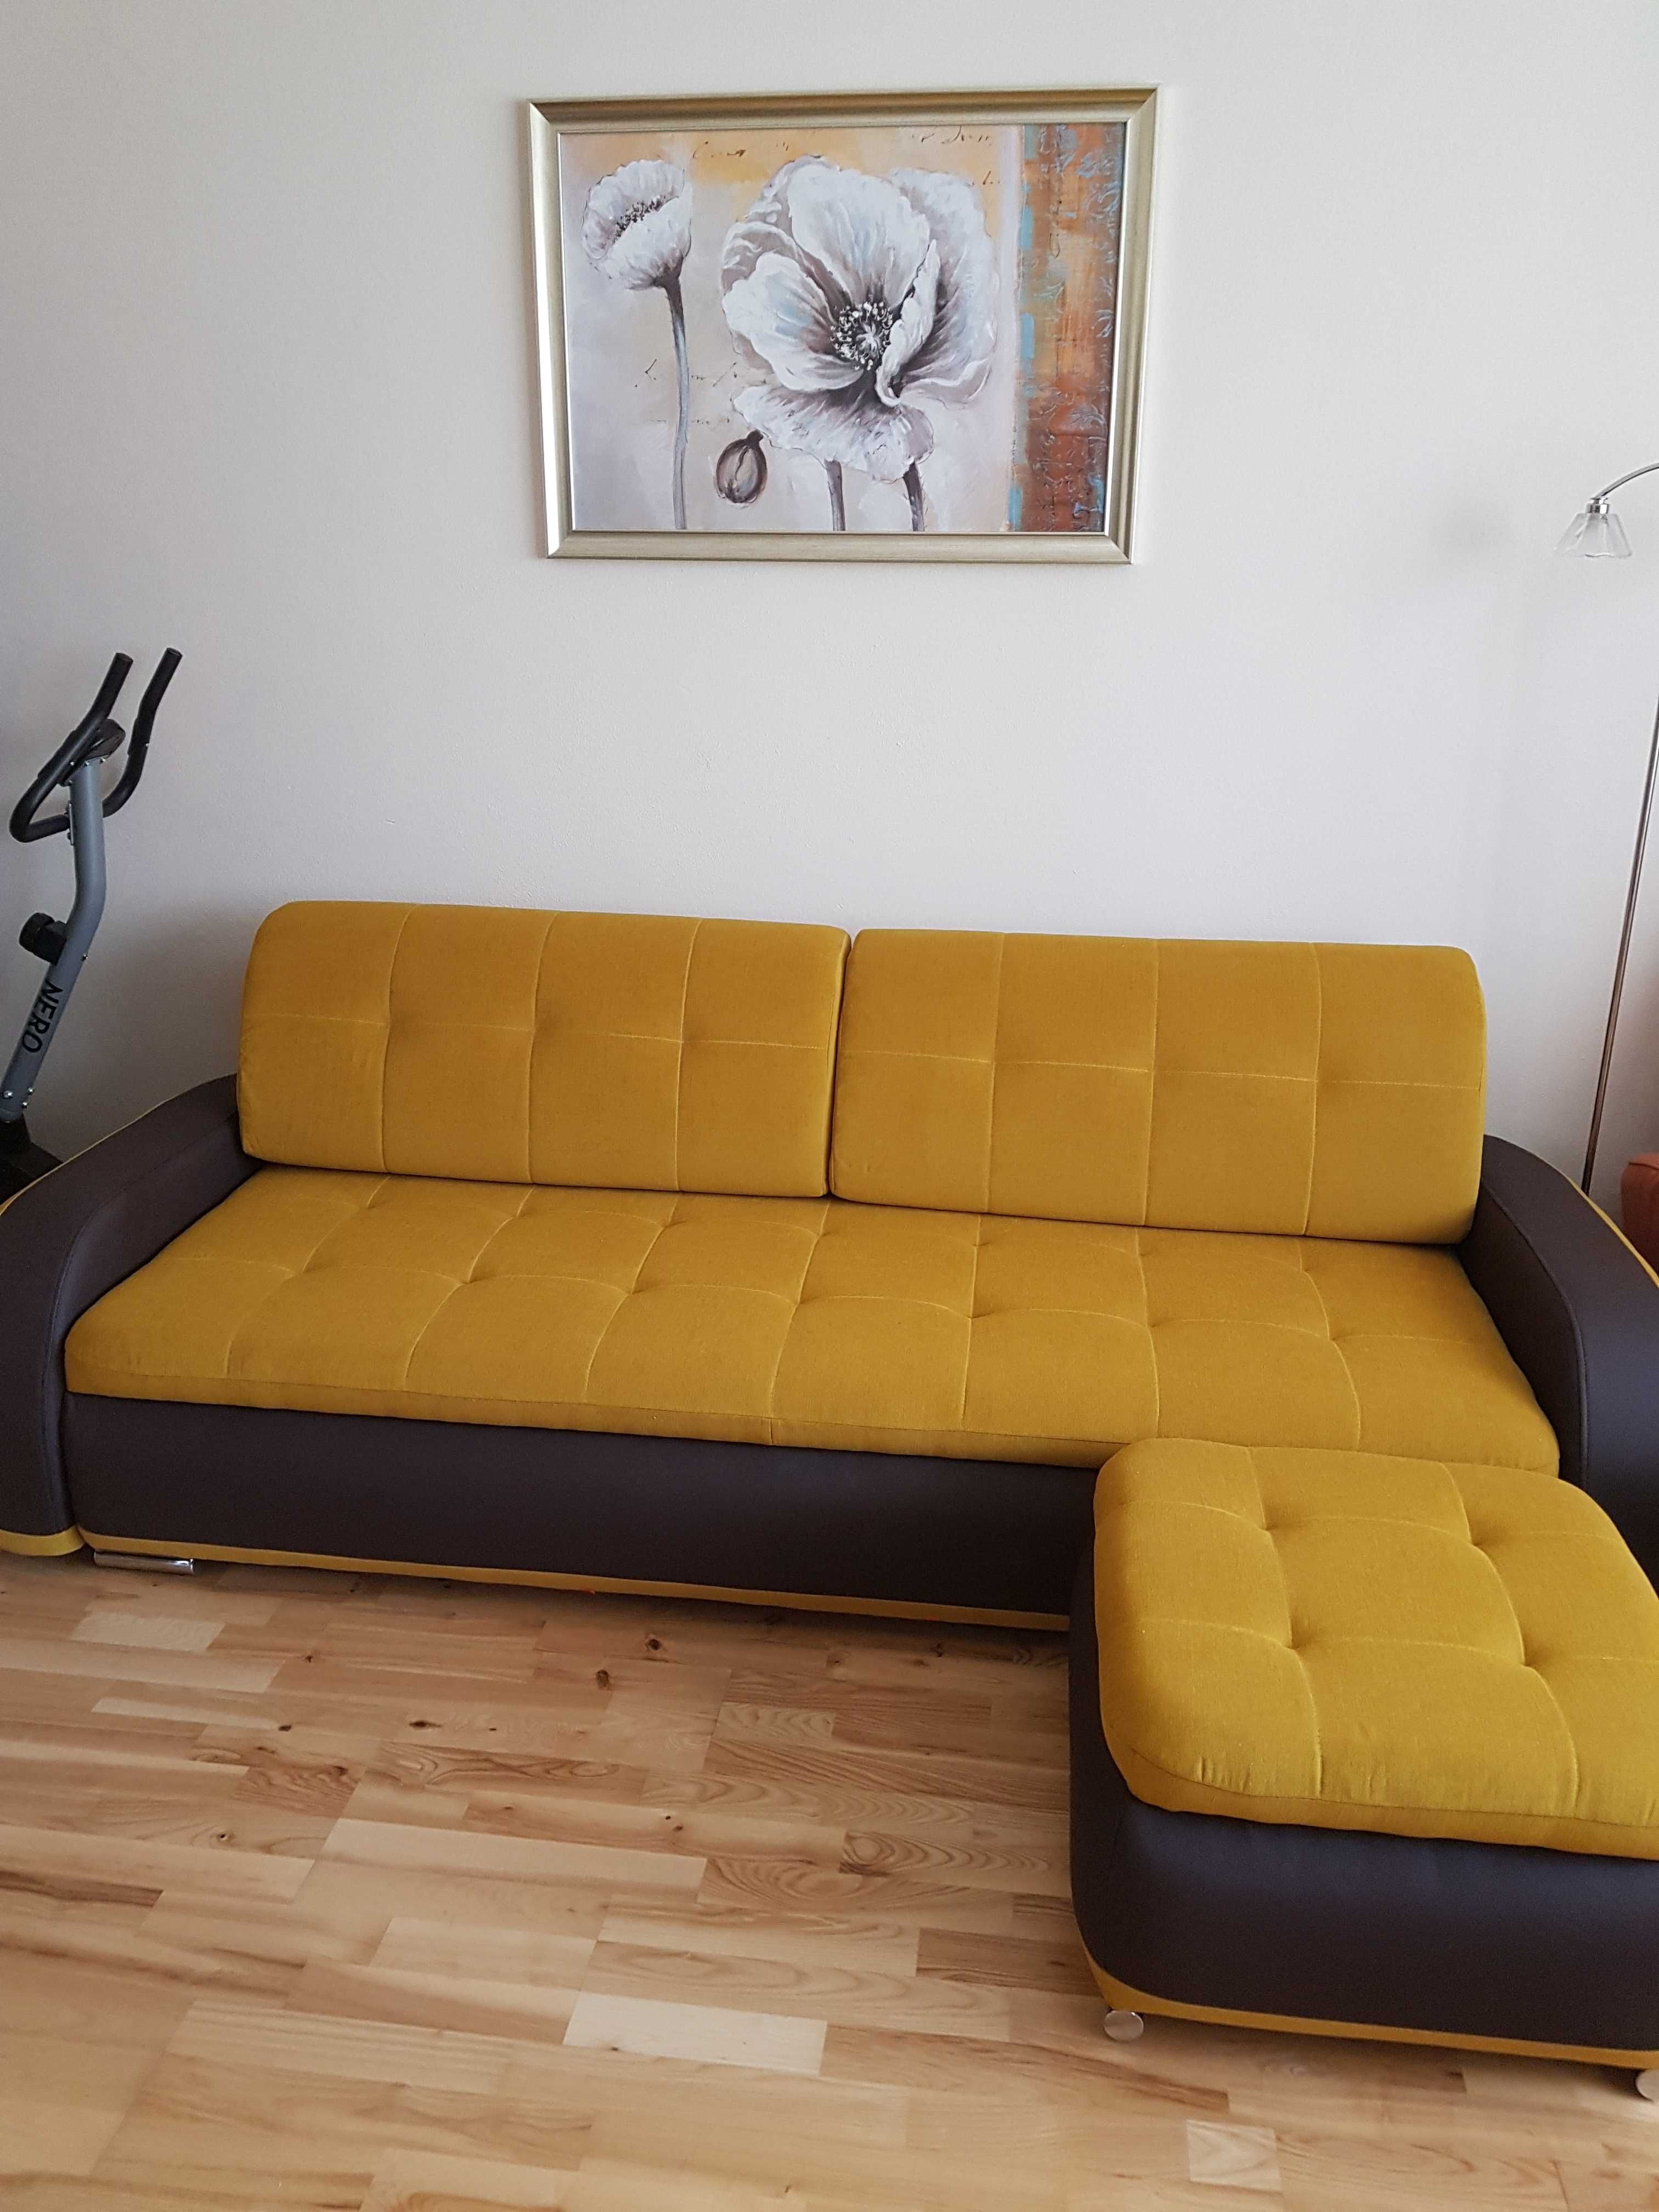 Sofa, fotel i pufa w bardzo dobrym stanie